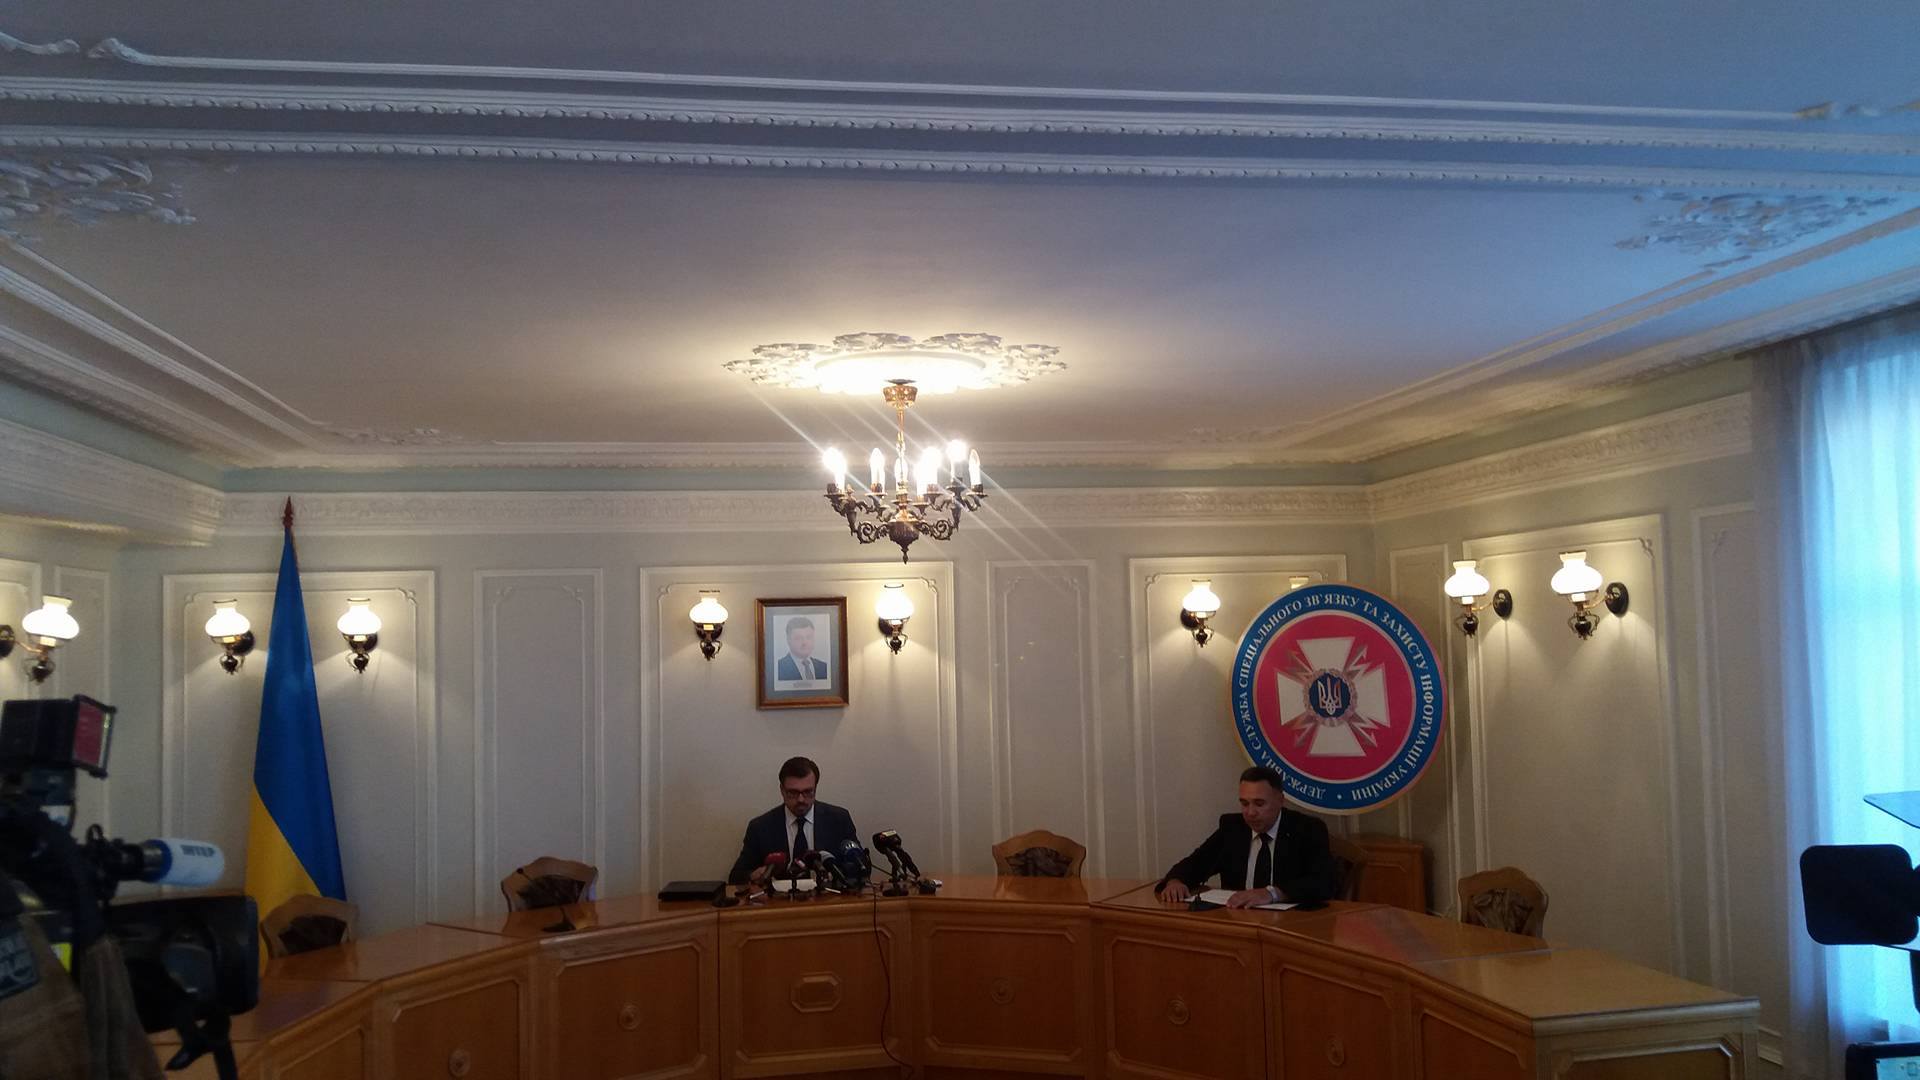 Реестр э-деклараций полностью не готов, но начнет работу, — председатель Госслужбы спецсвязи Л. Евдоченко